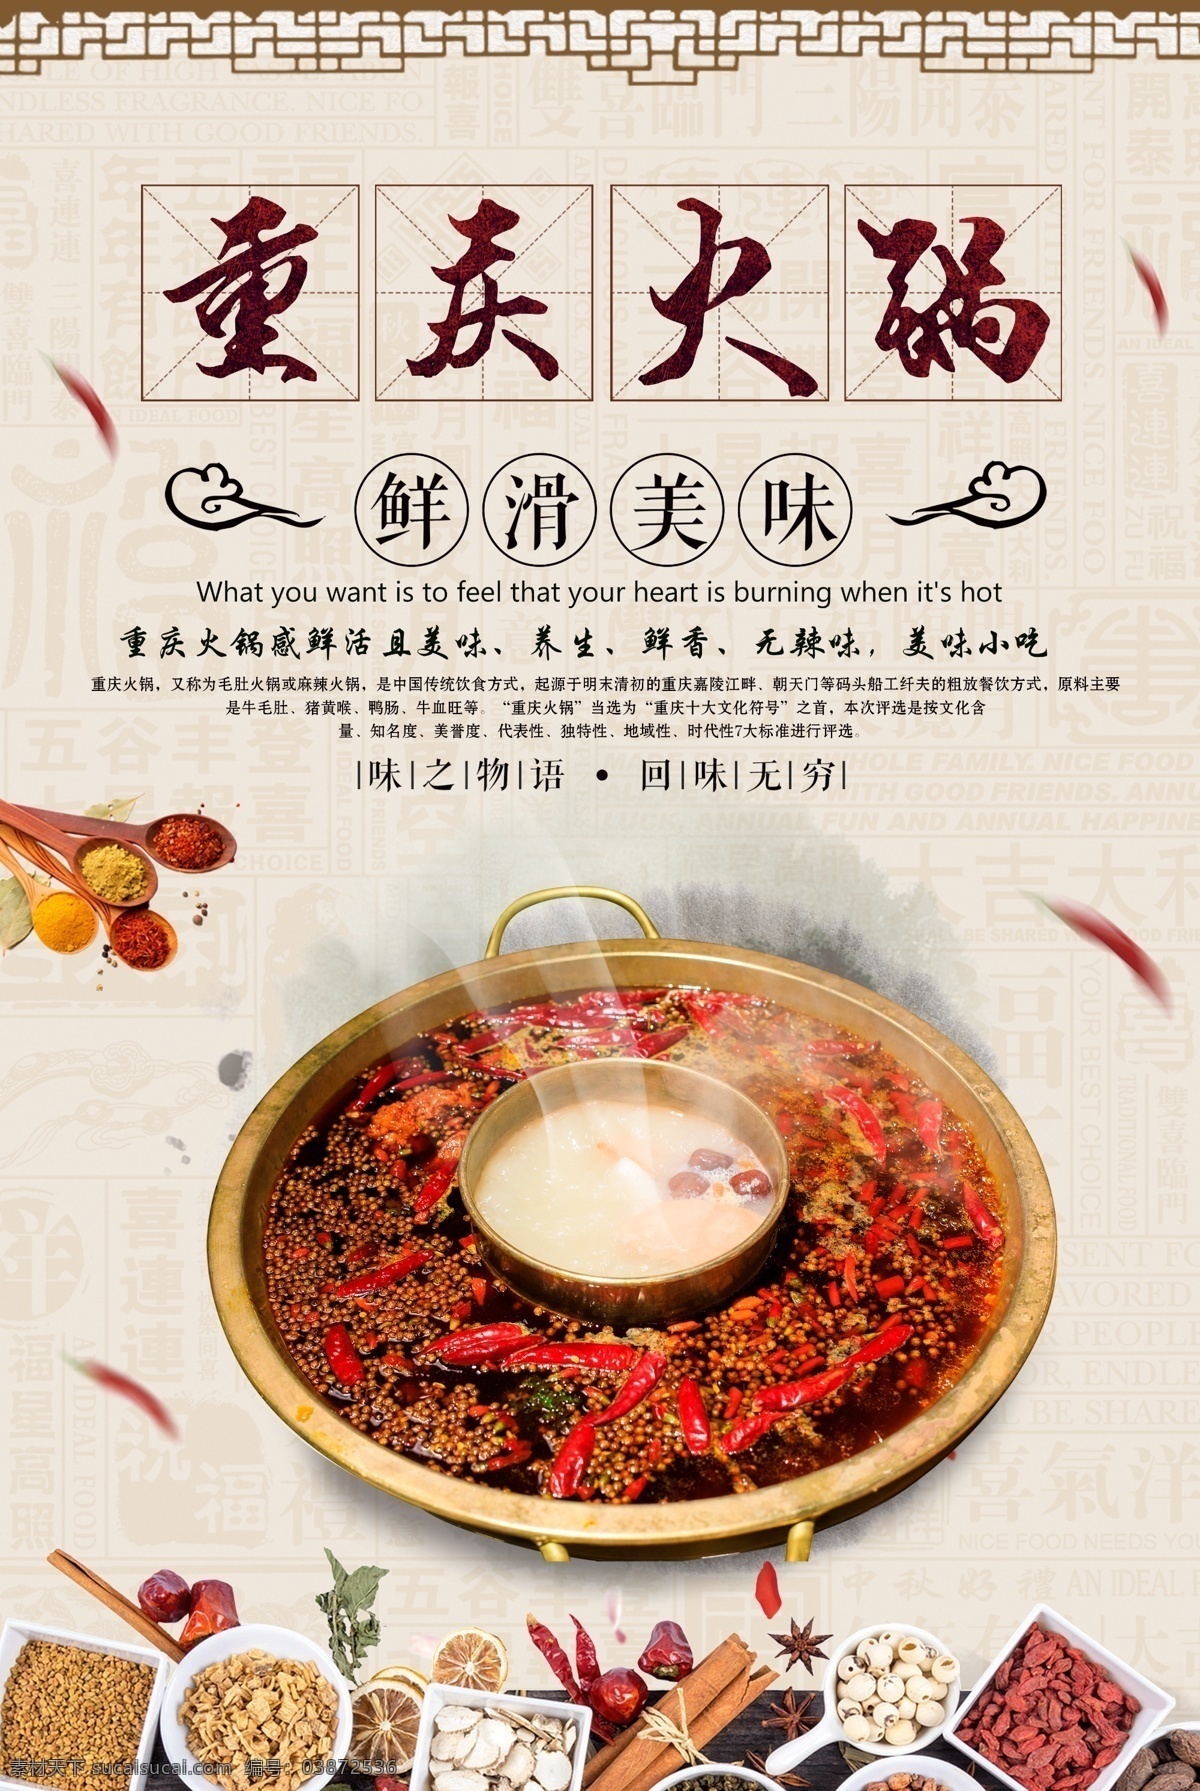 重庆火锅 美食 活动 宣传海报 宣传 海报 餐饮美食 类